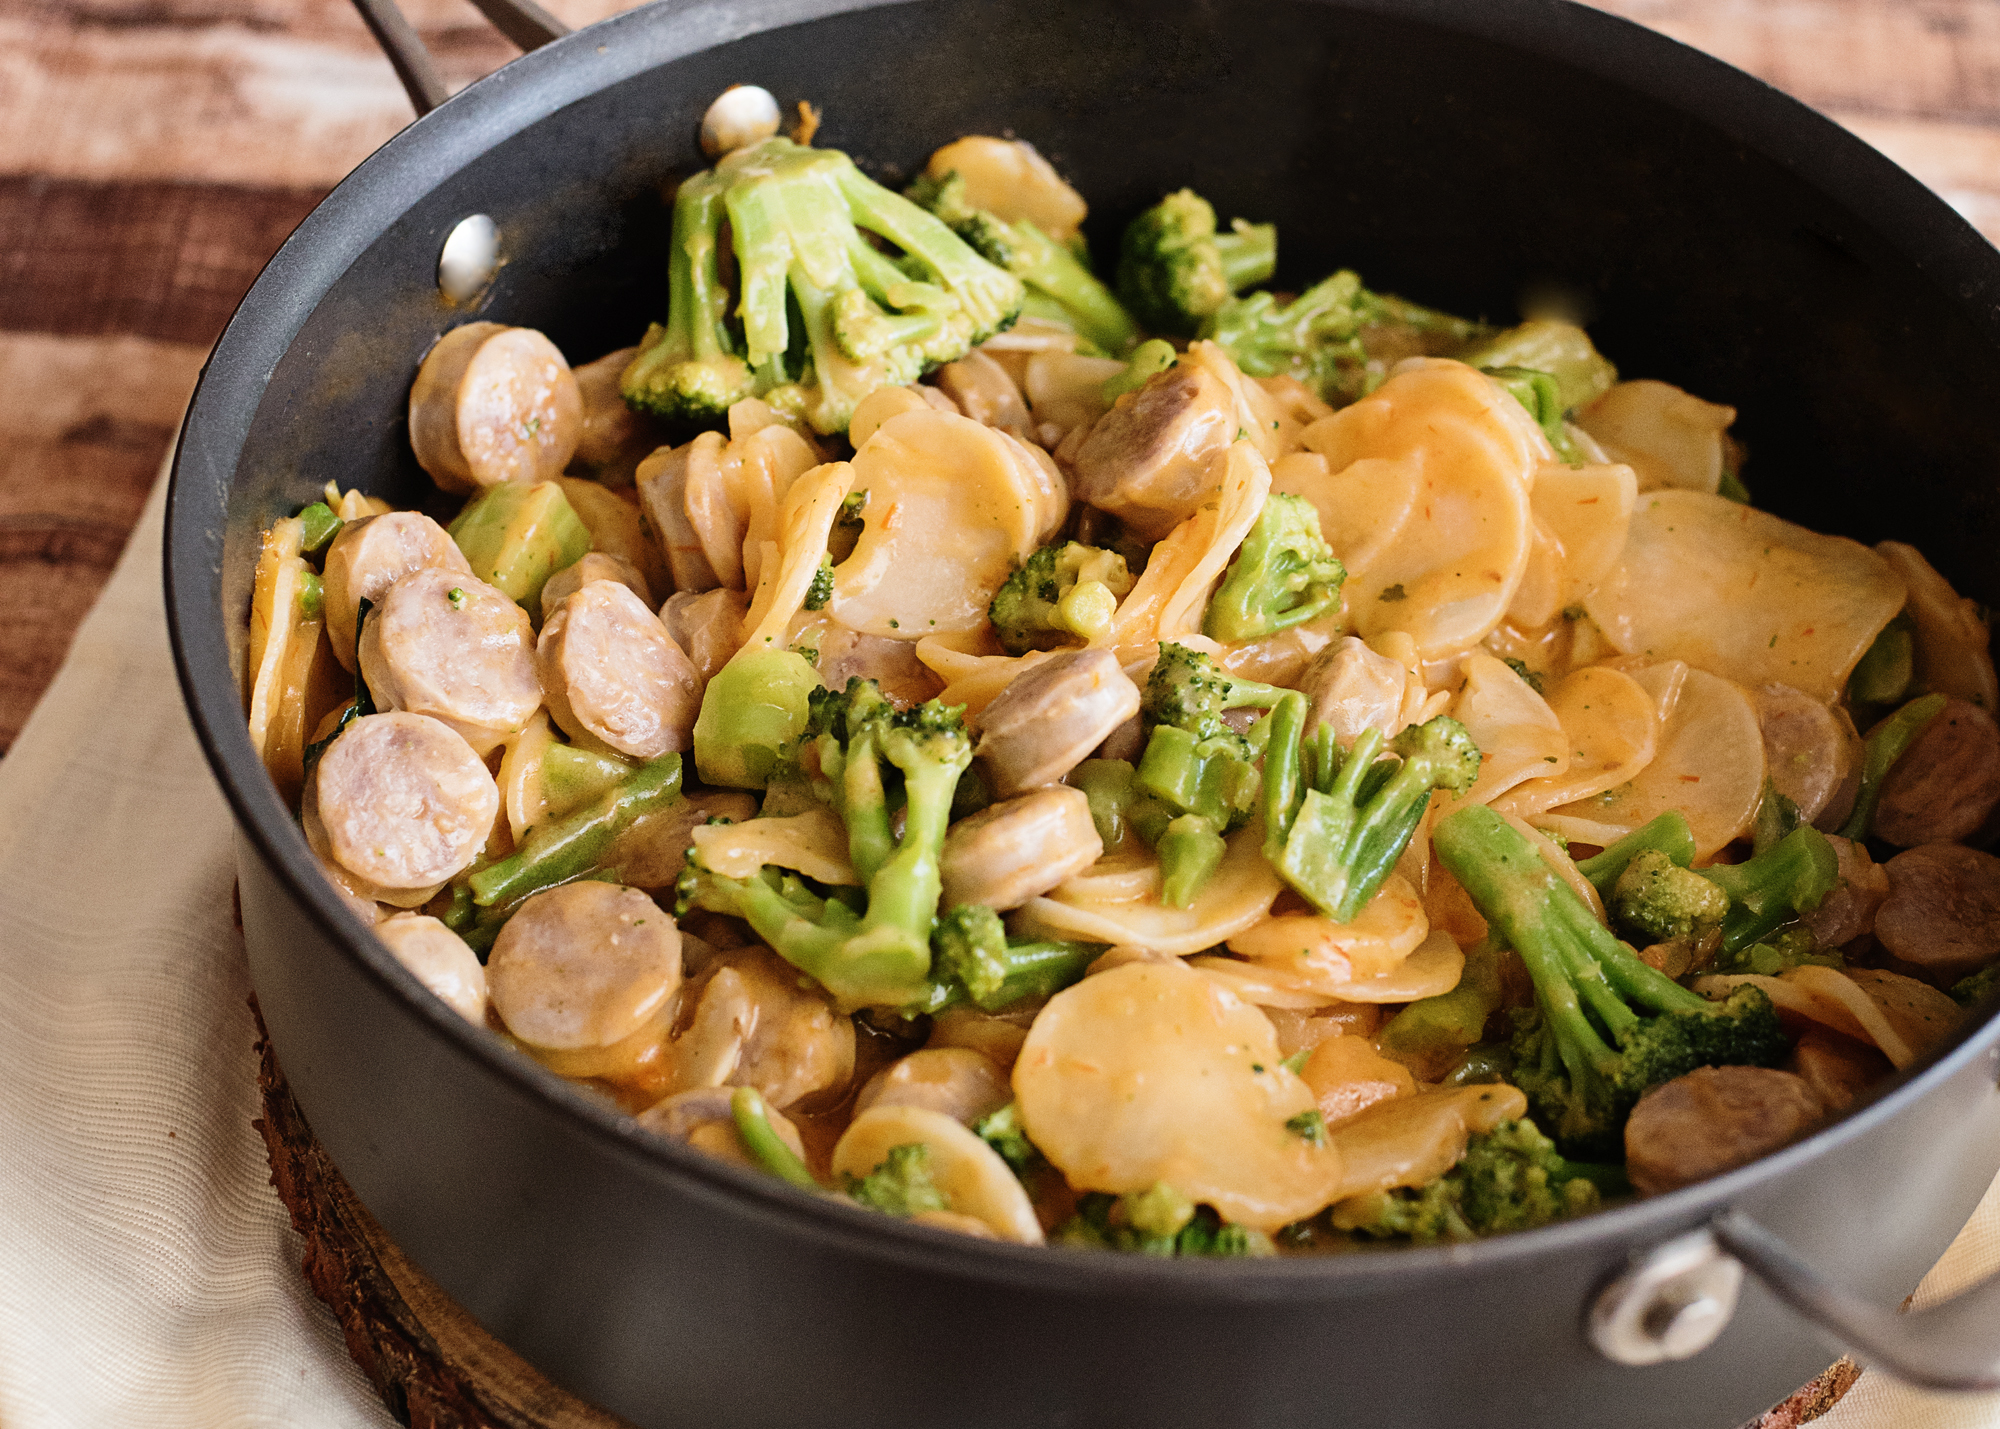 Cheesy Potatoes, Broccoli and Bratwurst Skillet Recipe